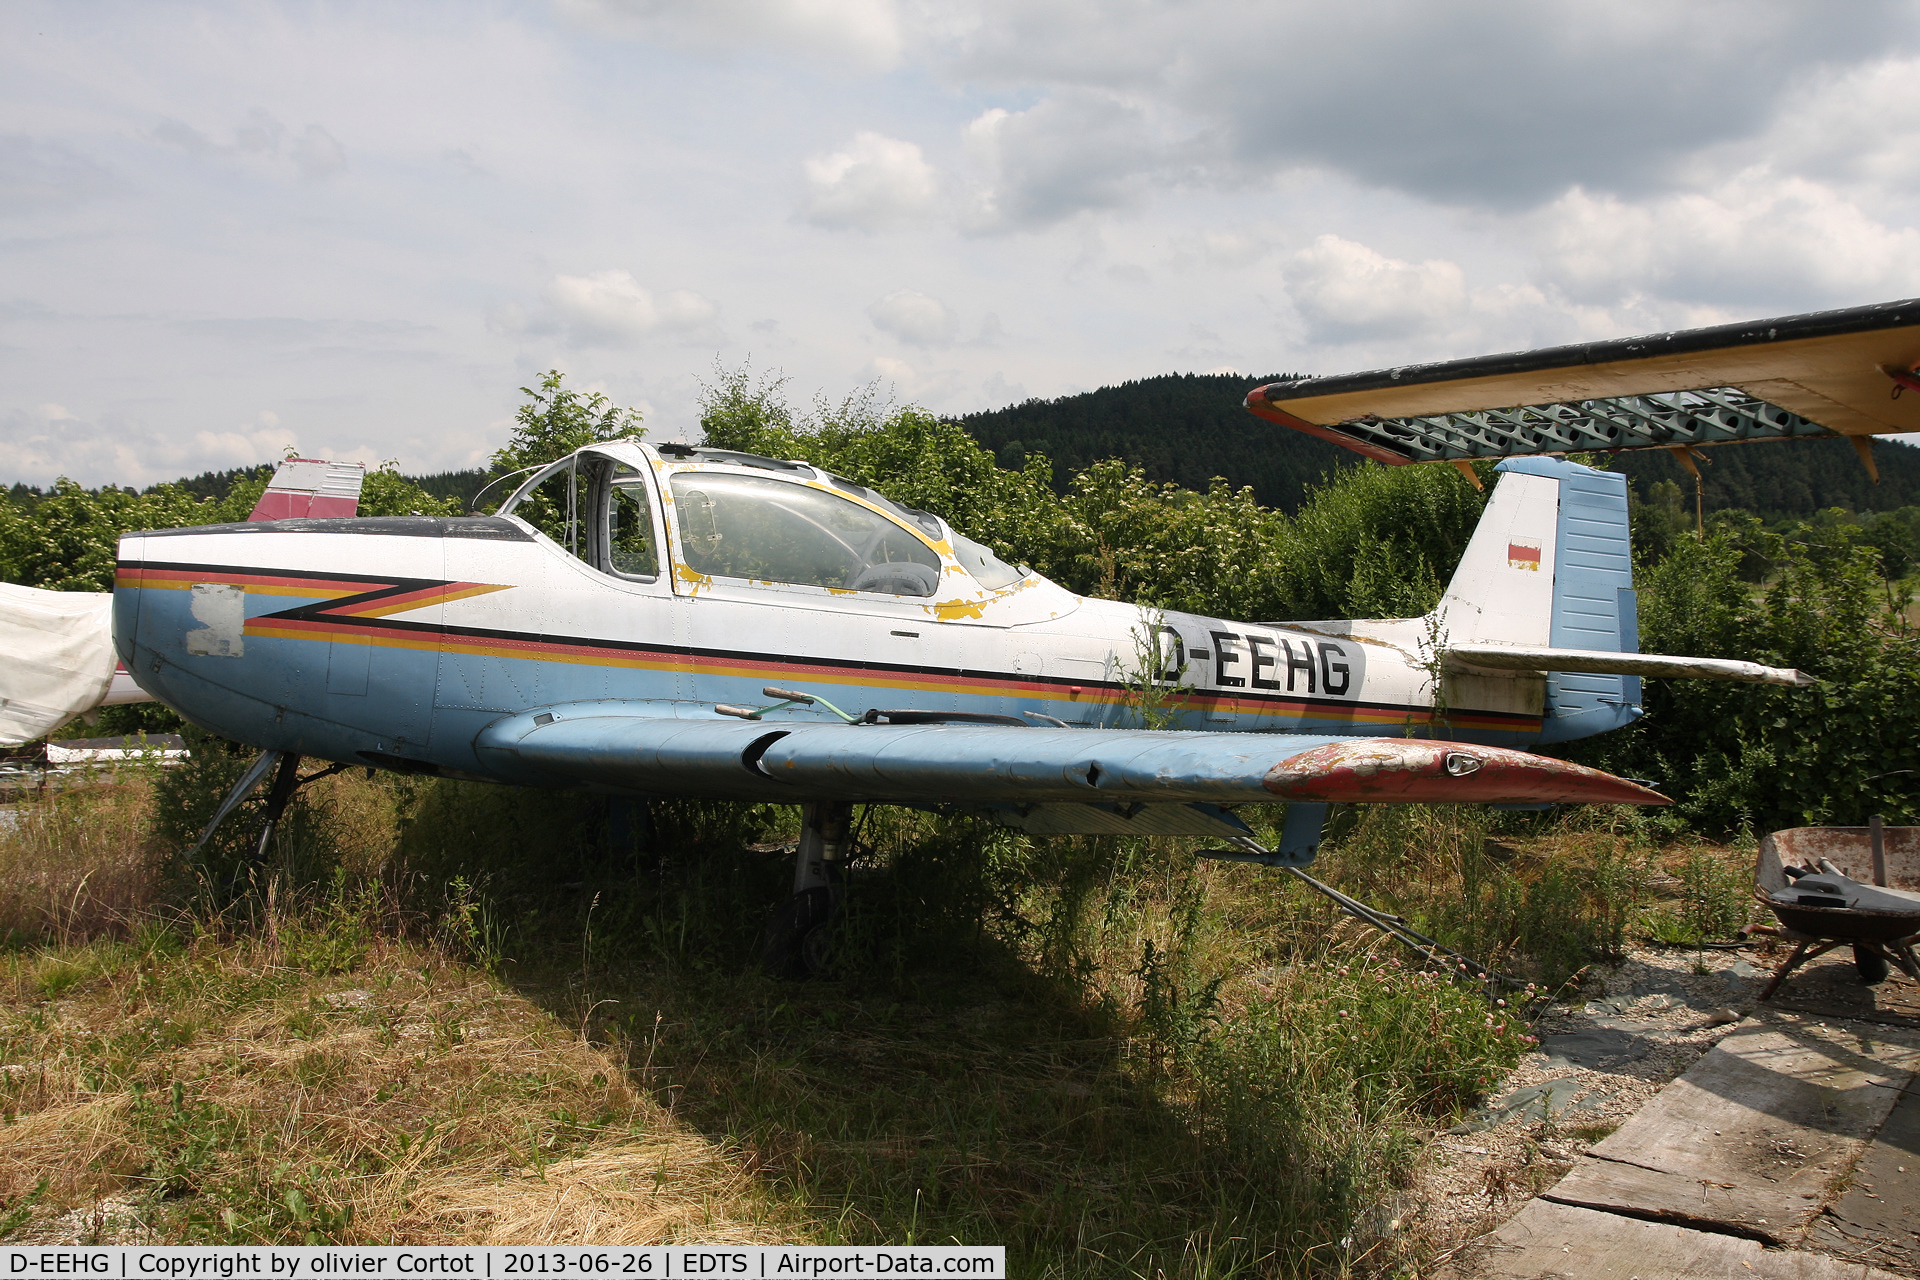 D-EEHG, Focke-Wulf FWP-149D C/N 065, has seen better days...